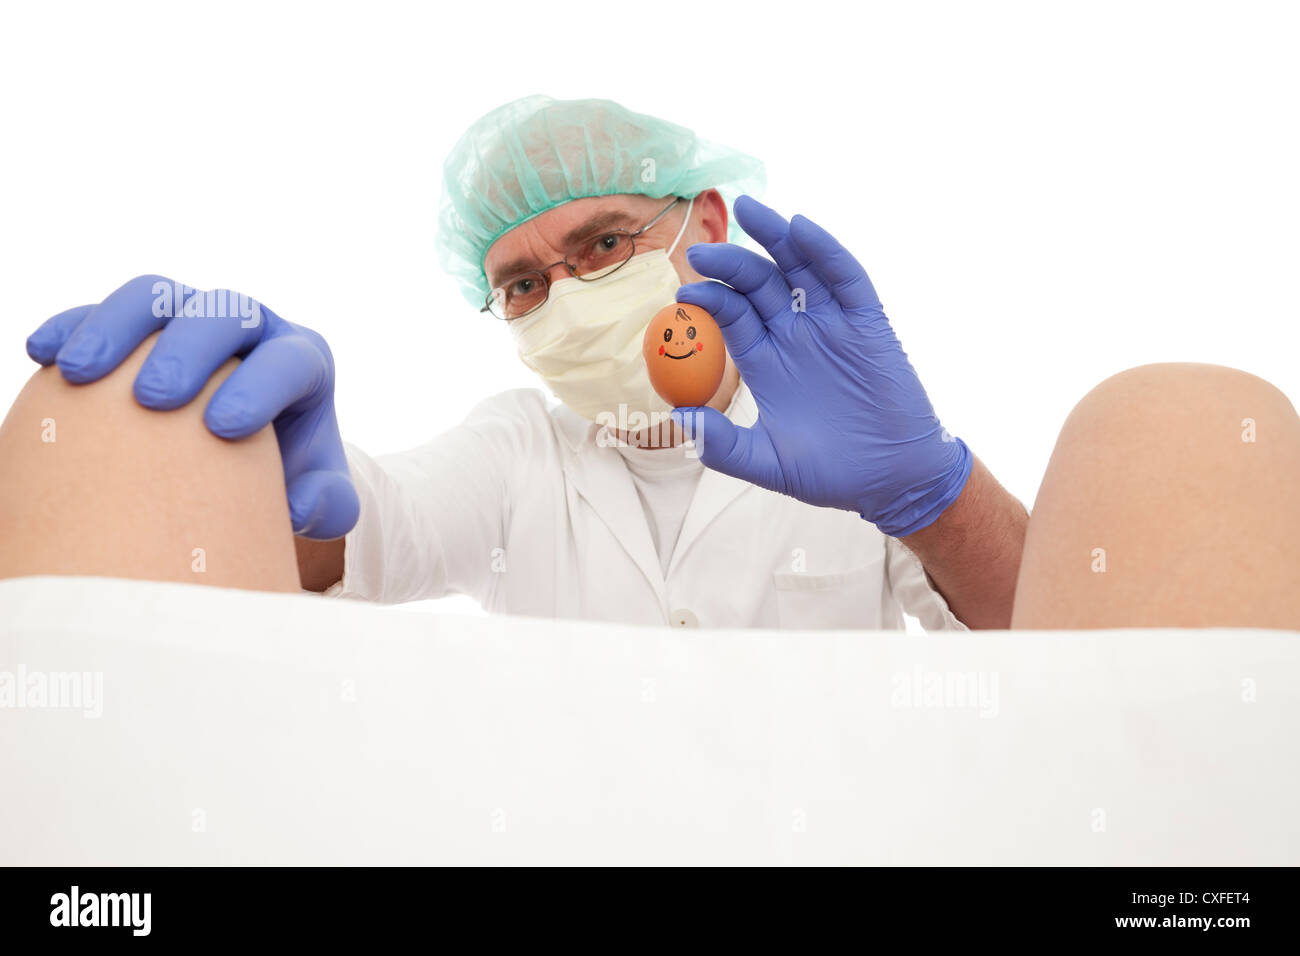 Medico ostetrico riceve il parto su sfondo bianco Foto Stock